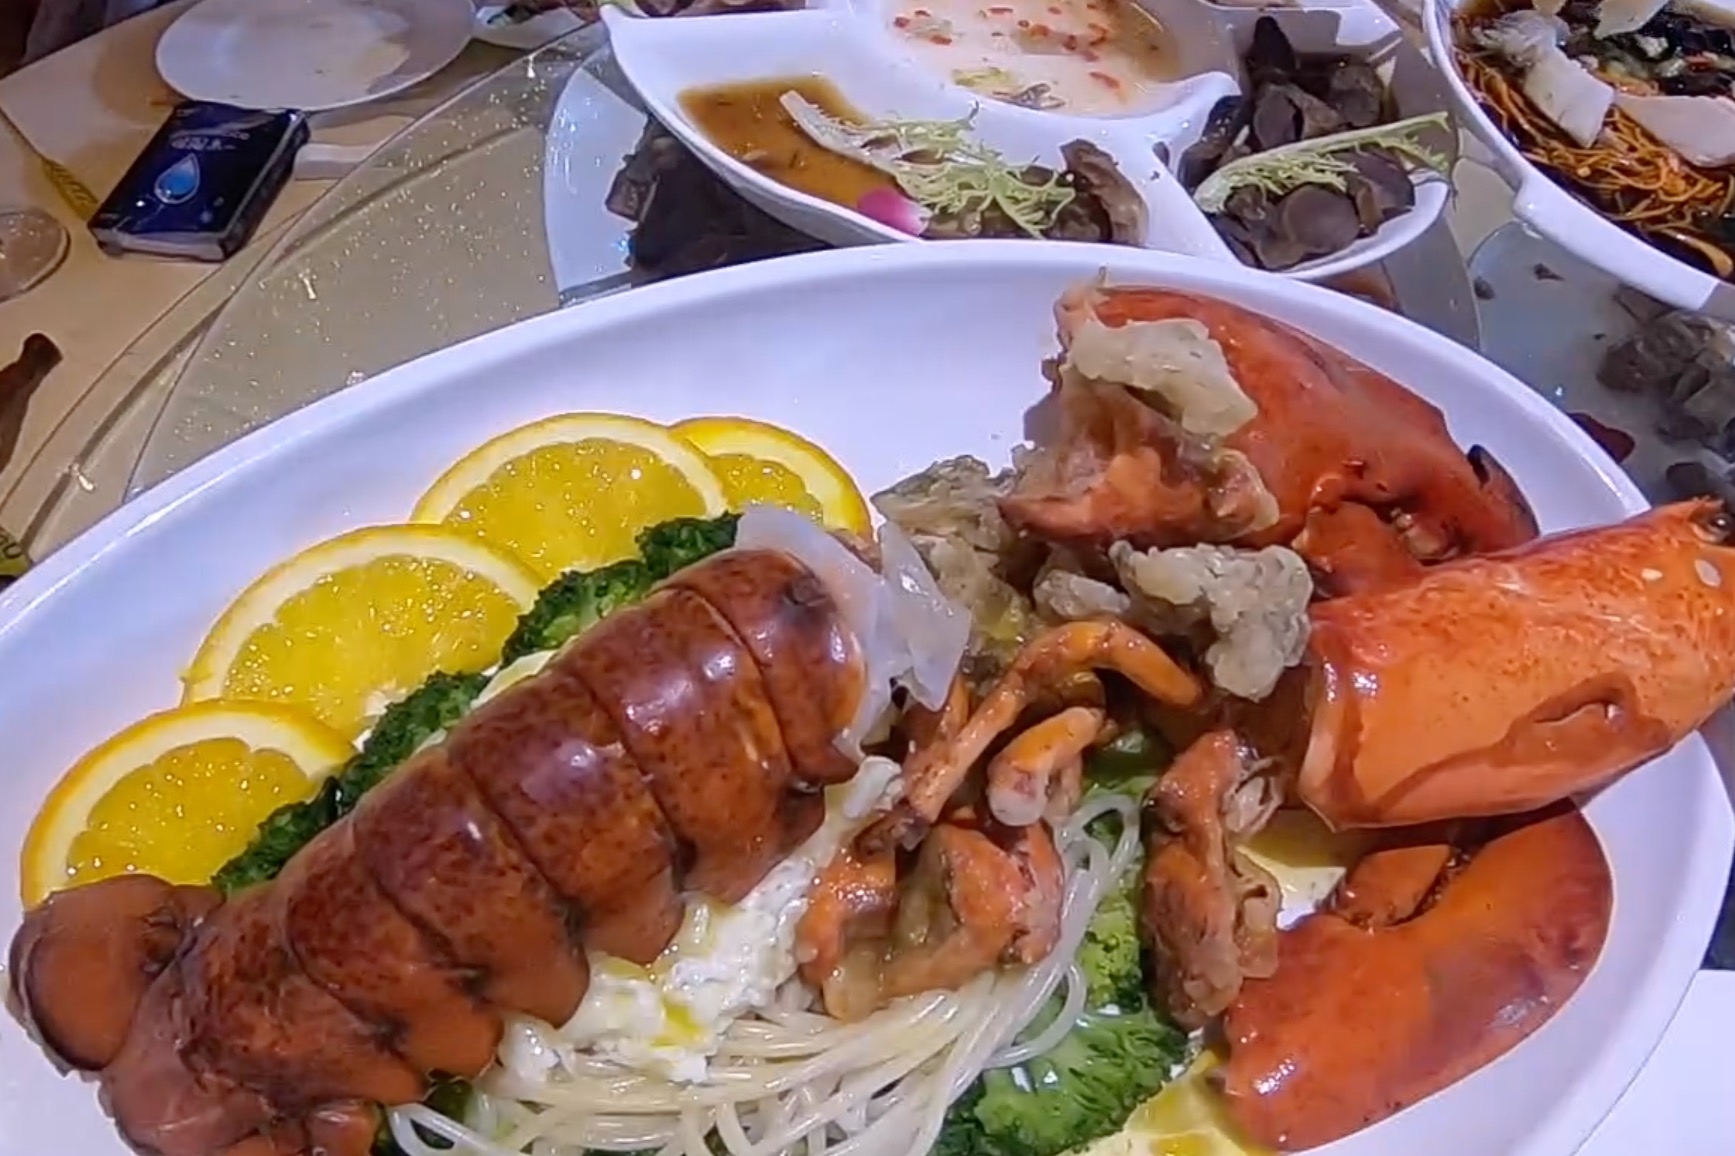 大刘在哈尔滨五星级酒店吃婚宴,一桌菜1688,看看都有啥?